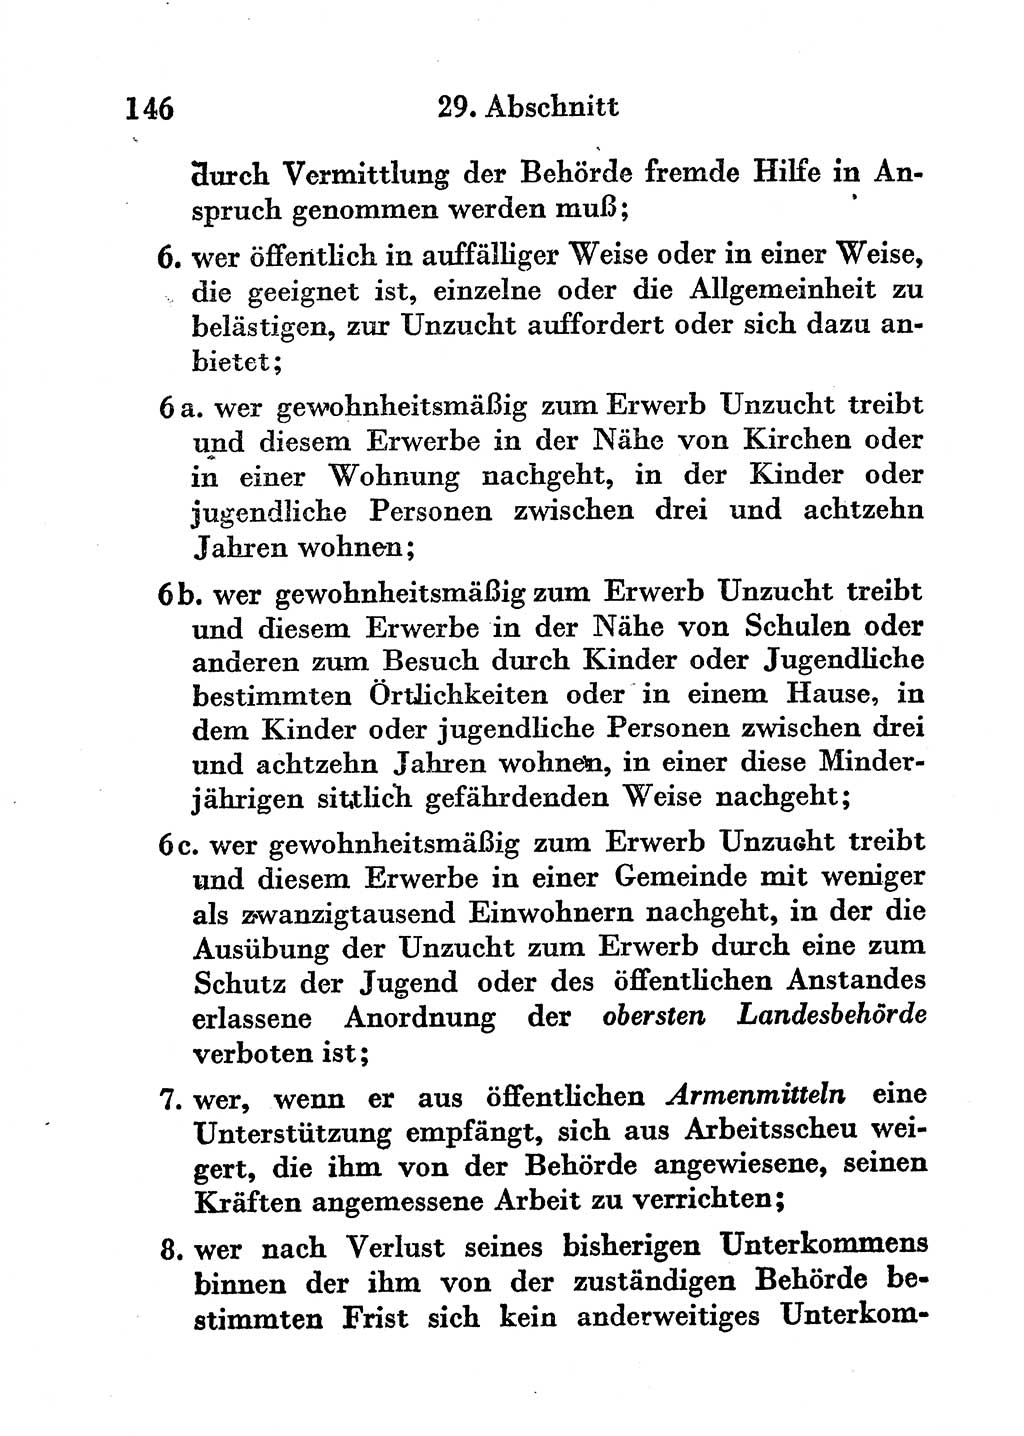 Strafgesetzbuch (StGB) und andere Strafgesetze [Deutsche Demokratische Republik (DDR)] 1956, Seite 146 (StGB Strafges. DDR 1956, S. 146)